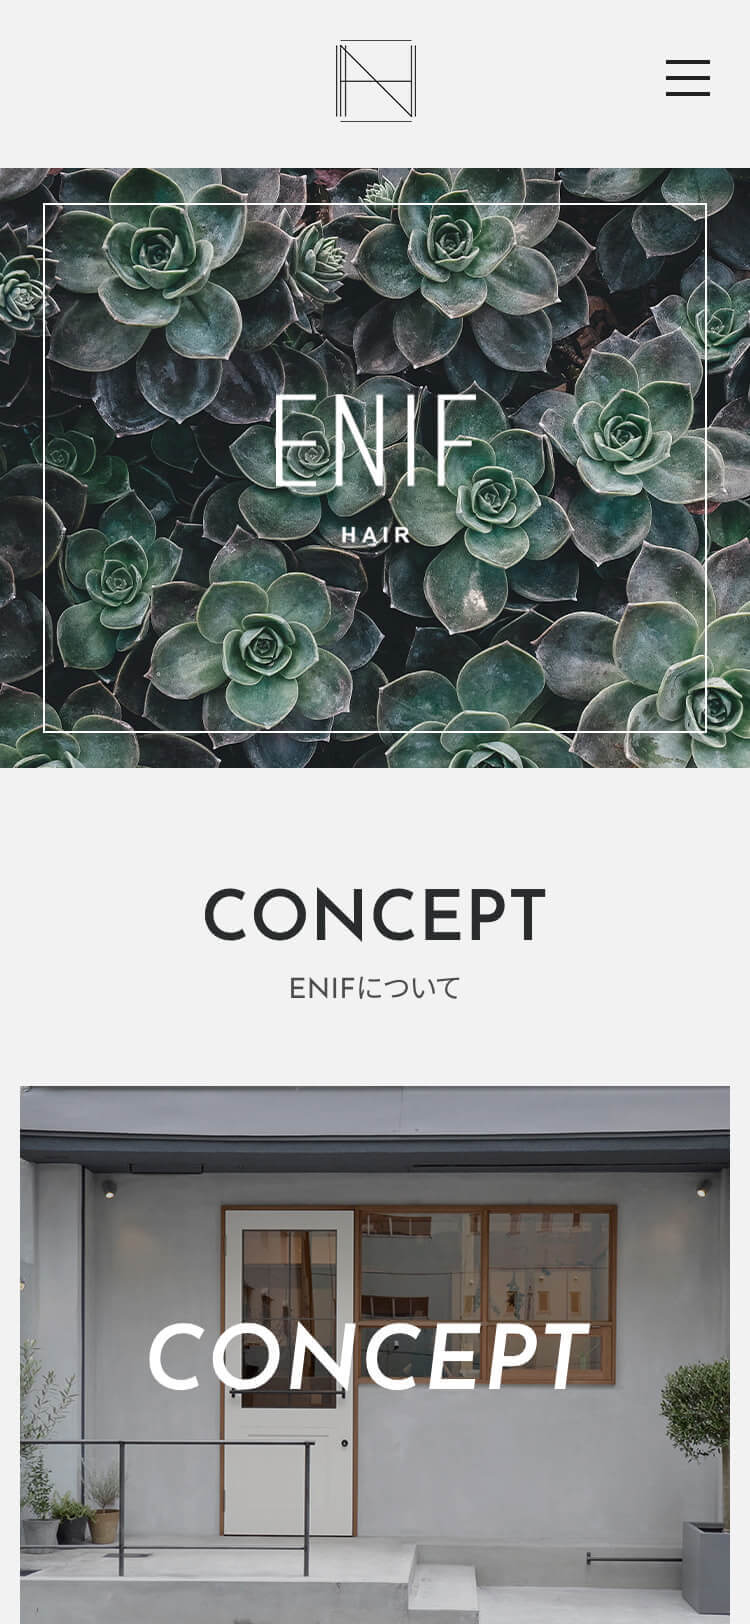 ENIFウェブサイトSPイメージ